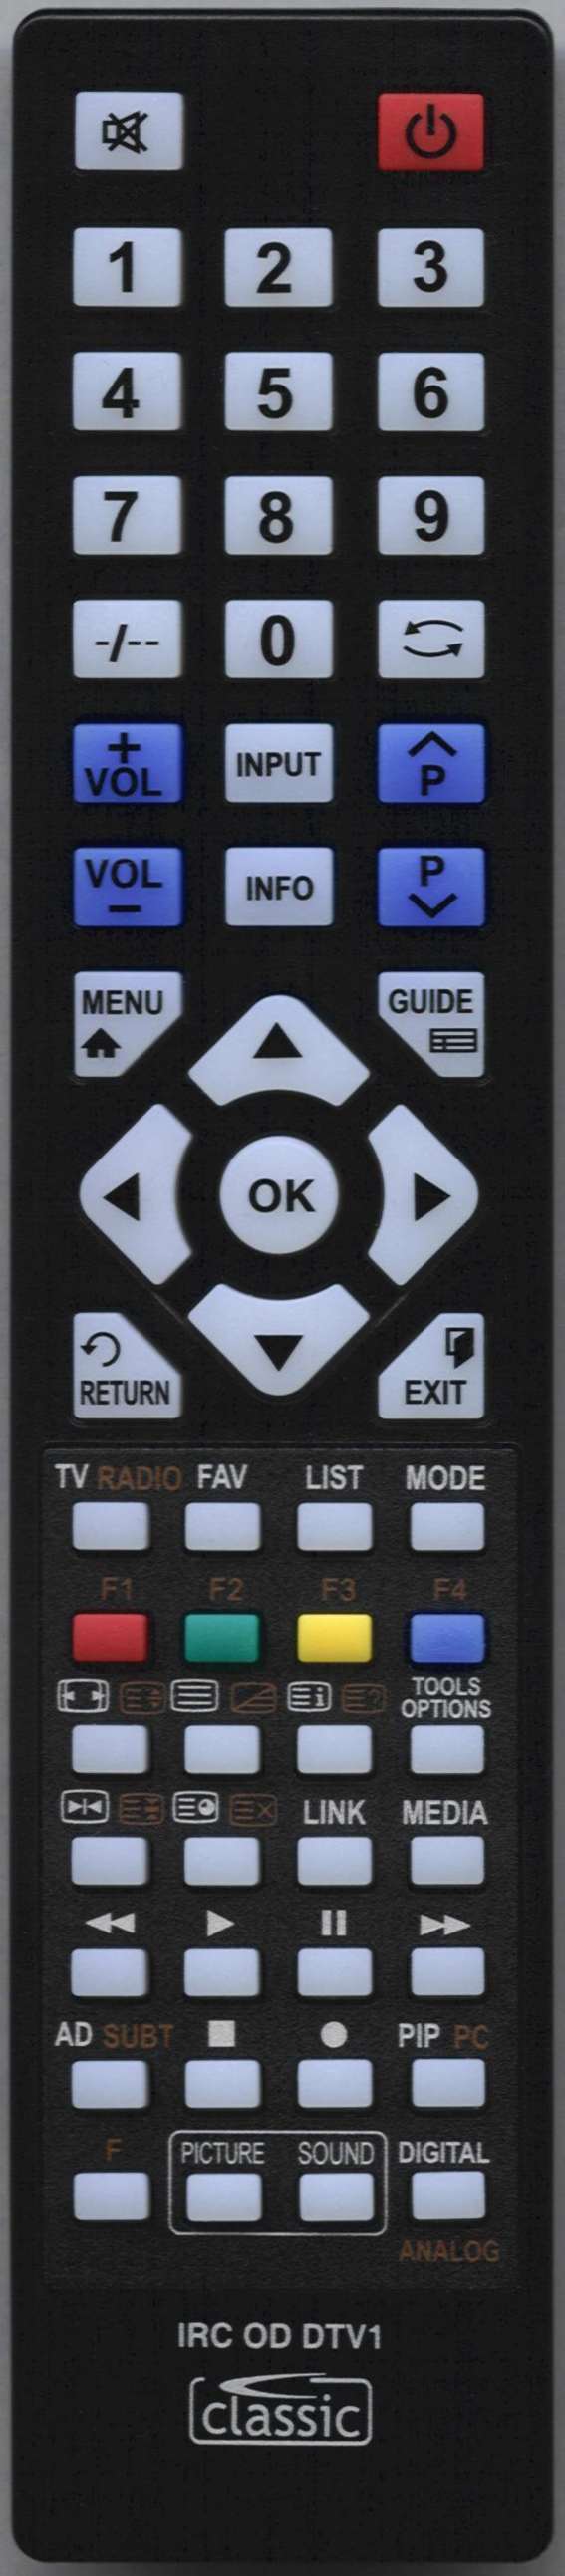 LG AKB73715680 Remote Control Alternative